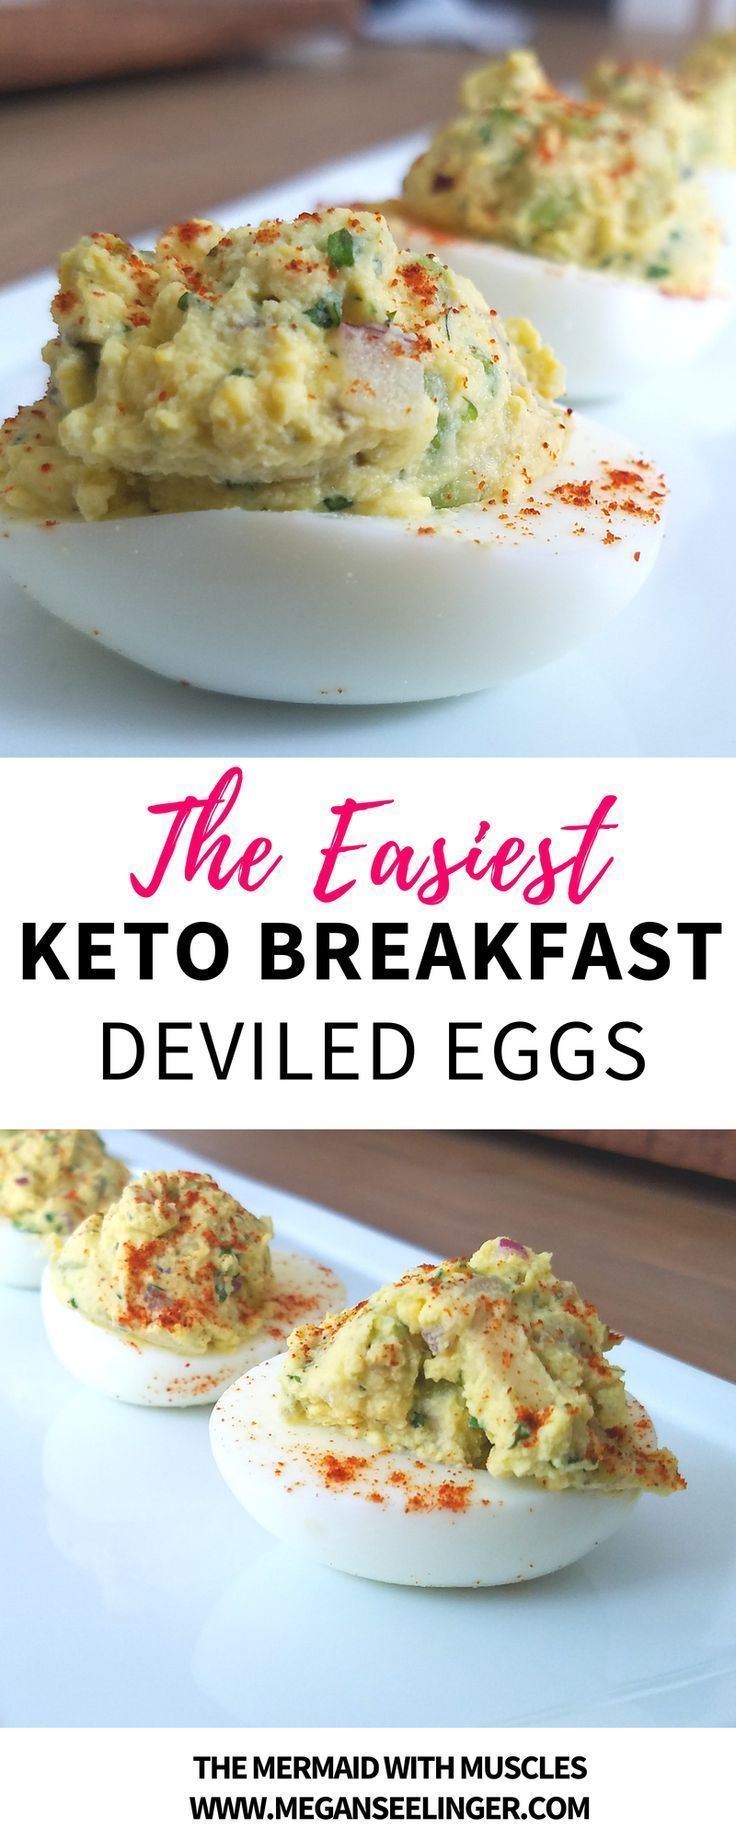 Perfect Keto Breakfast Avocado Deviled Eggs — Megan Seelinger Women's Weight loss & Nutrition Coaching -   18 healthy recipes Breakfast keto ideas